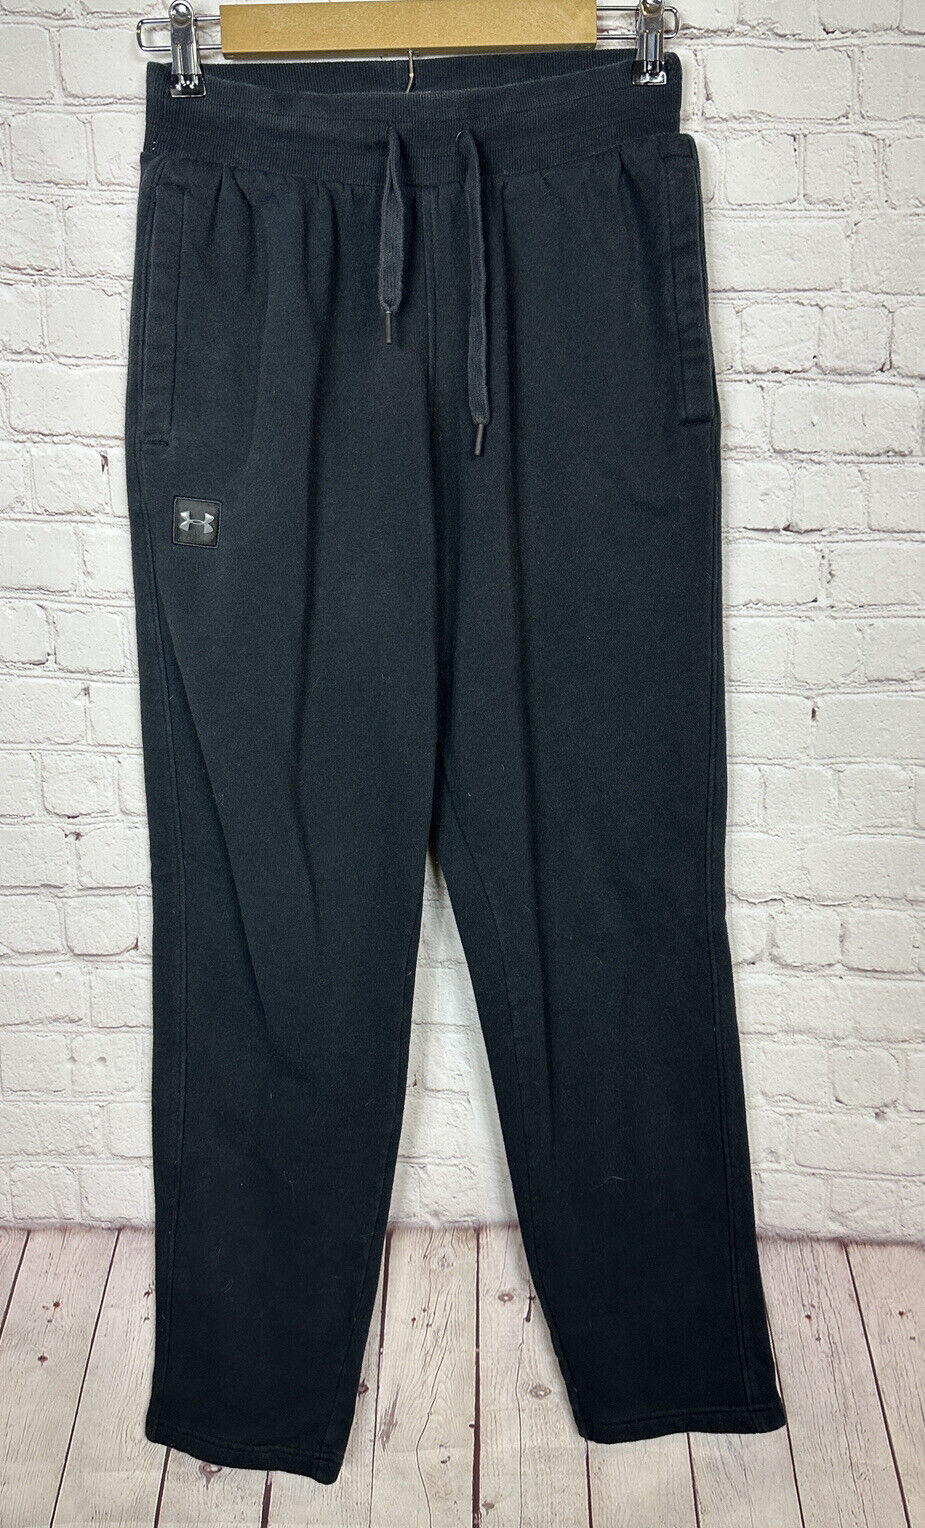 UNDER ARMOUR black Sweatpants Cotton Blend casual active comfort, sz S